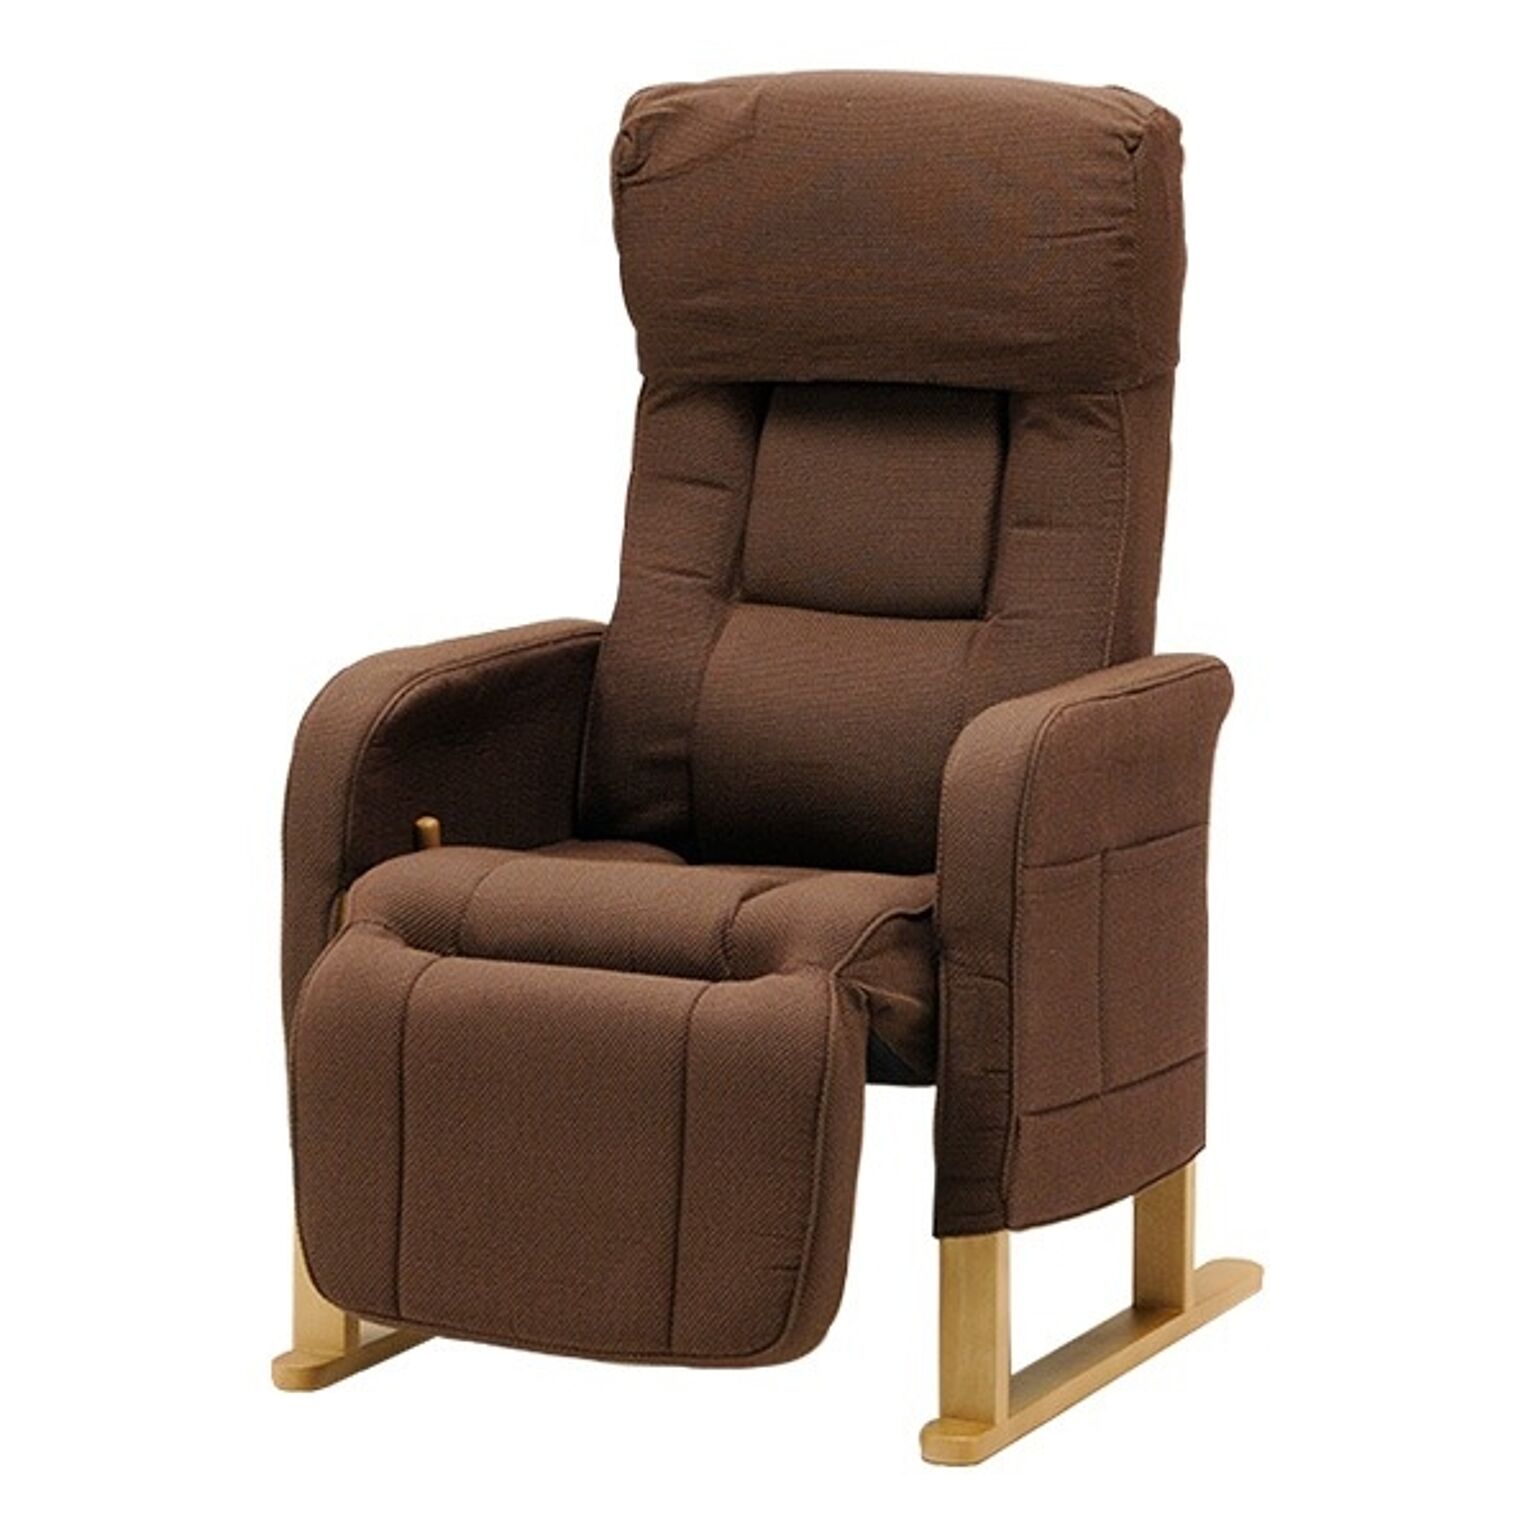 フットレスト付き 高座椅子/パーソナルチェア ダークブラウン ハイバック 座面高調節可 リクライニング 肘付き 『スモモ』